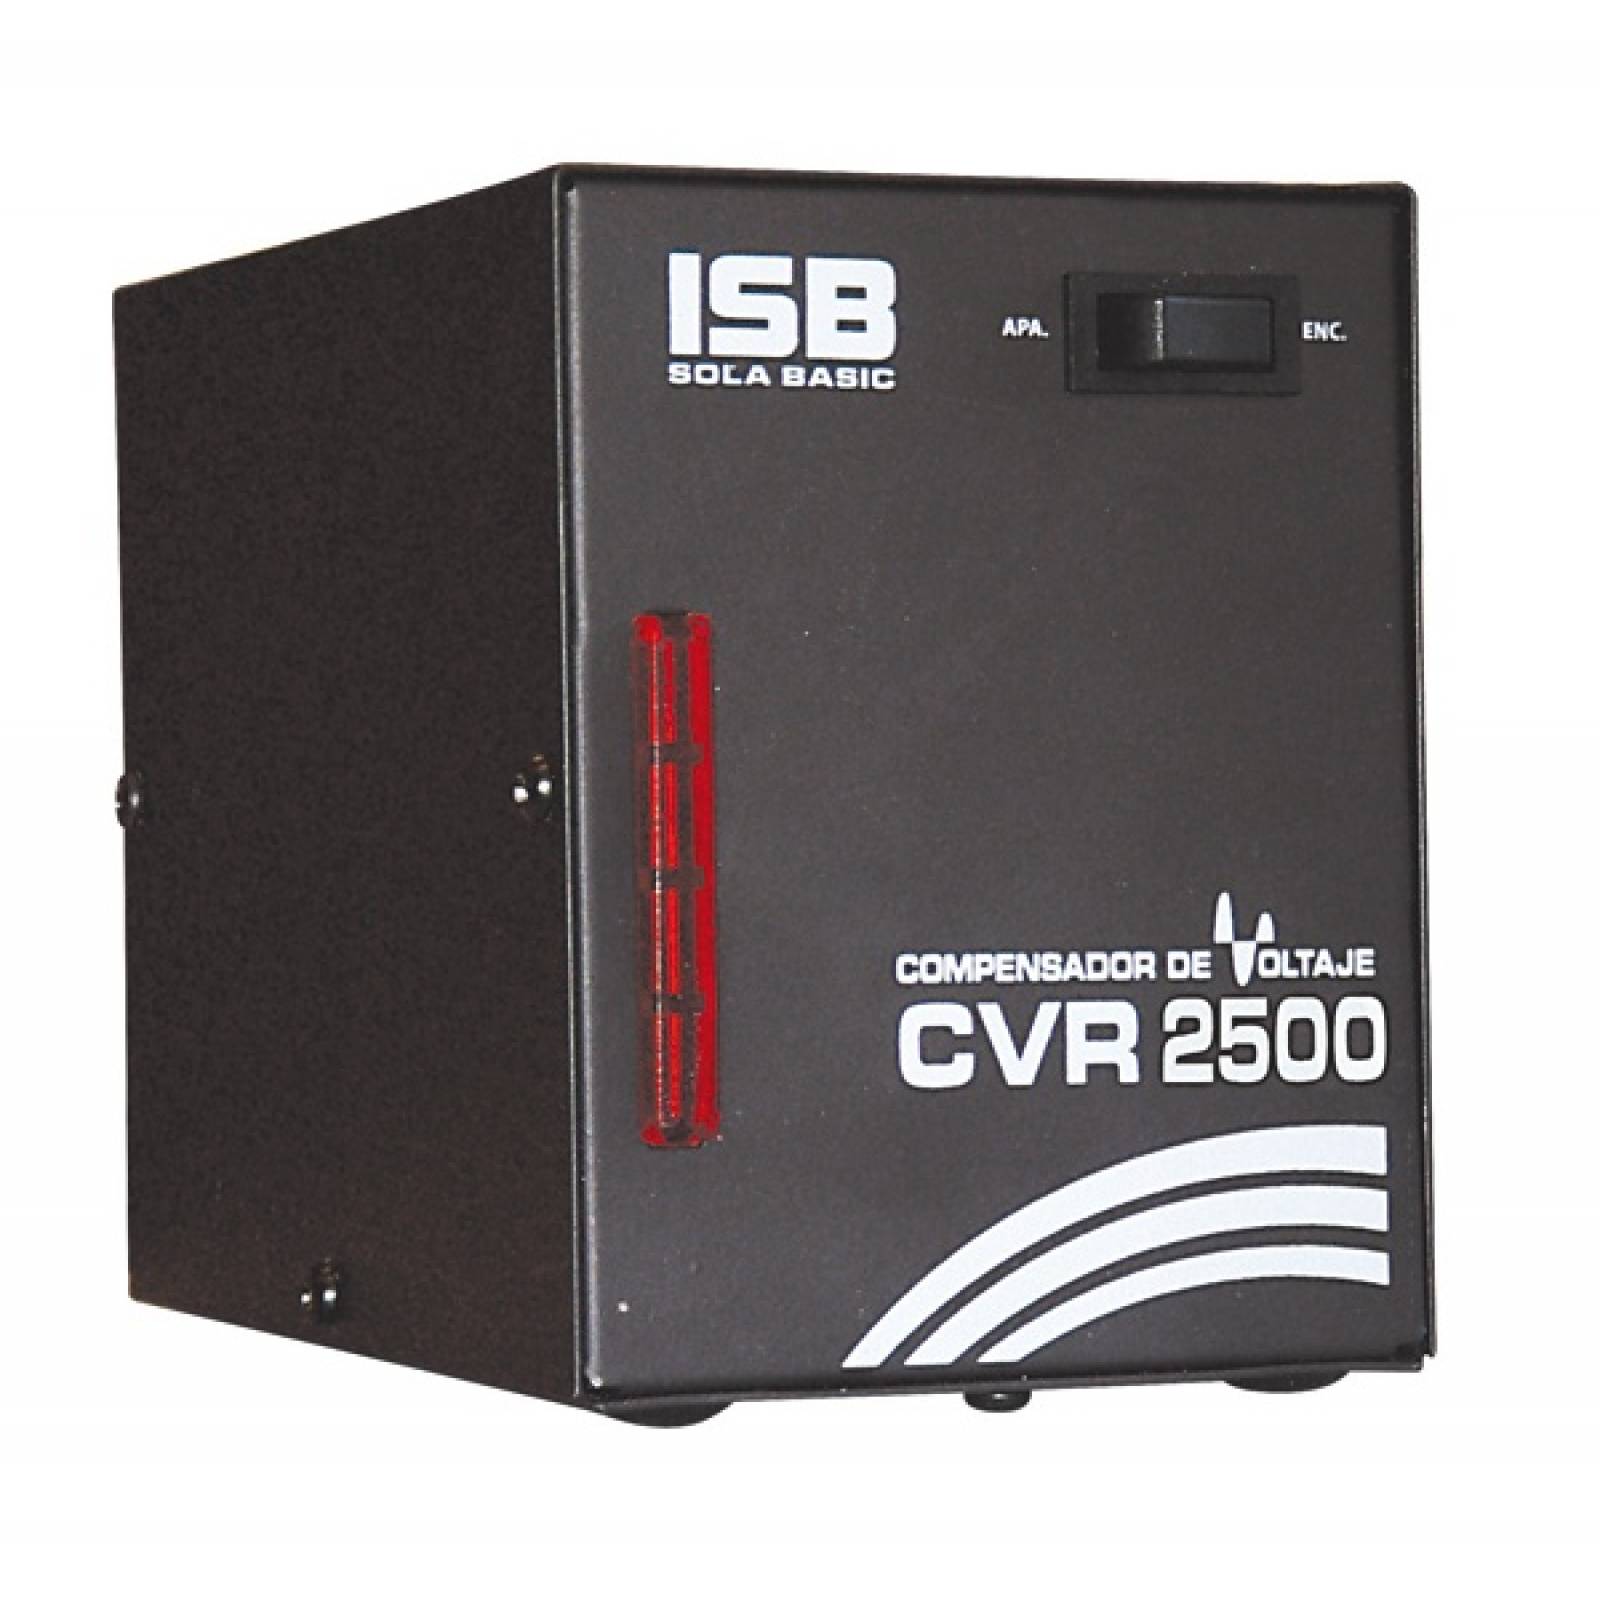 Compensador De Voltaje Sola Basic Isb 2500 Va/1500w